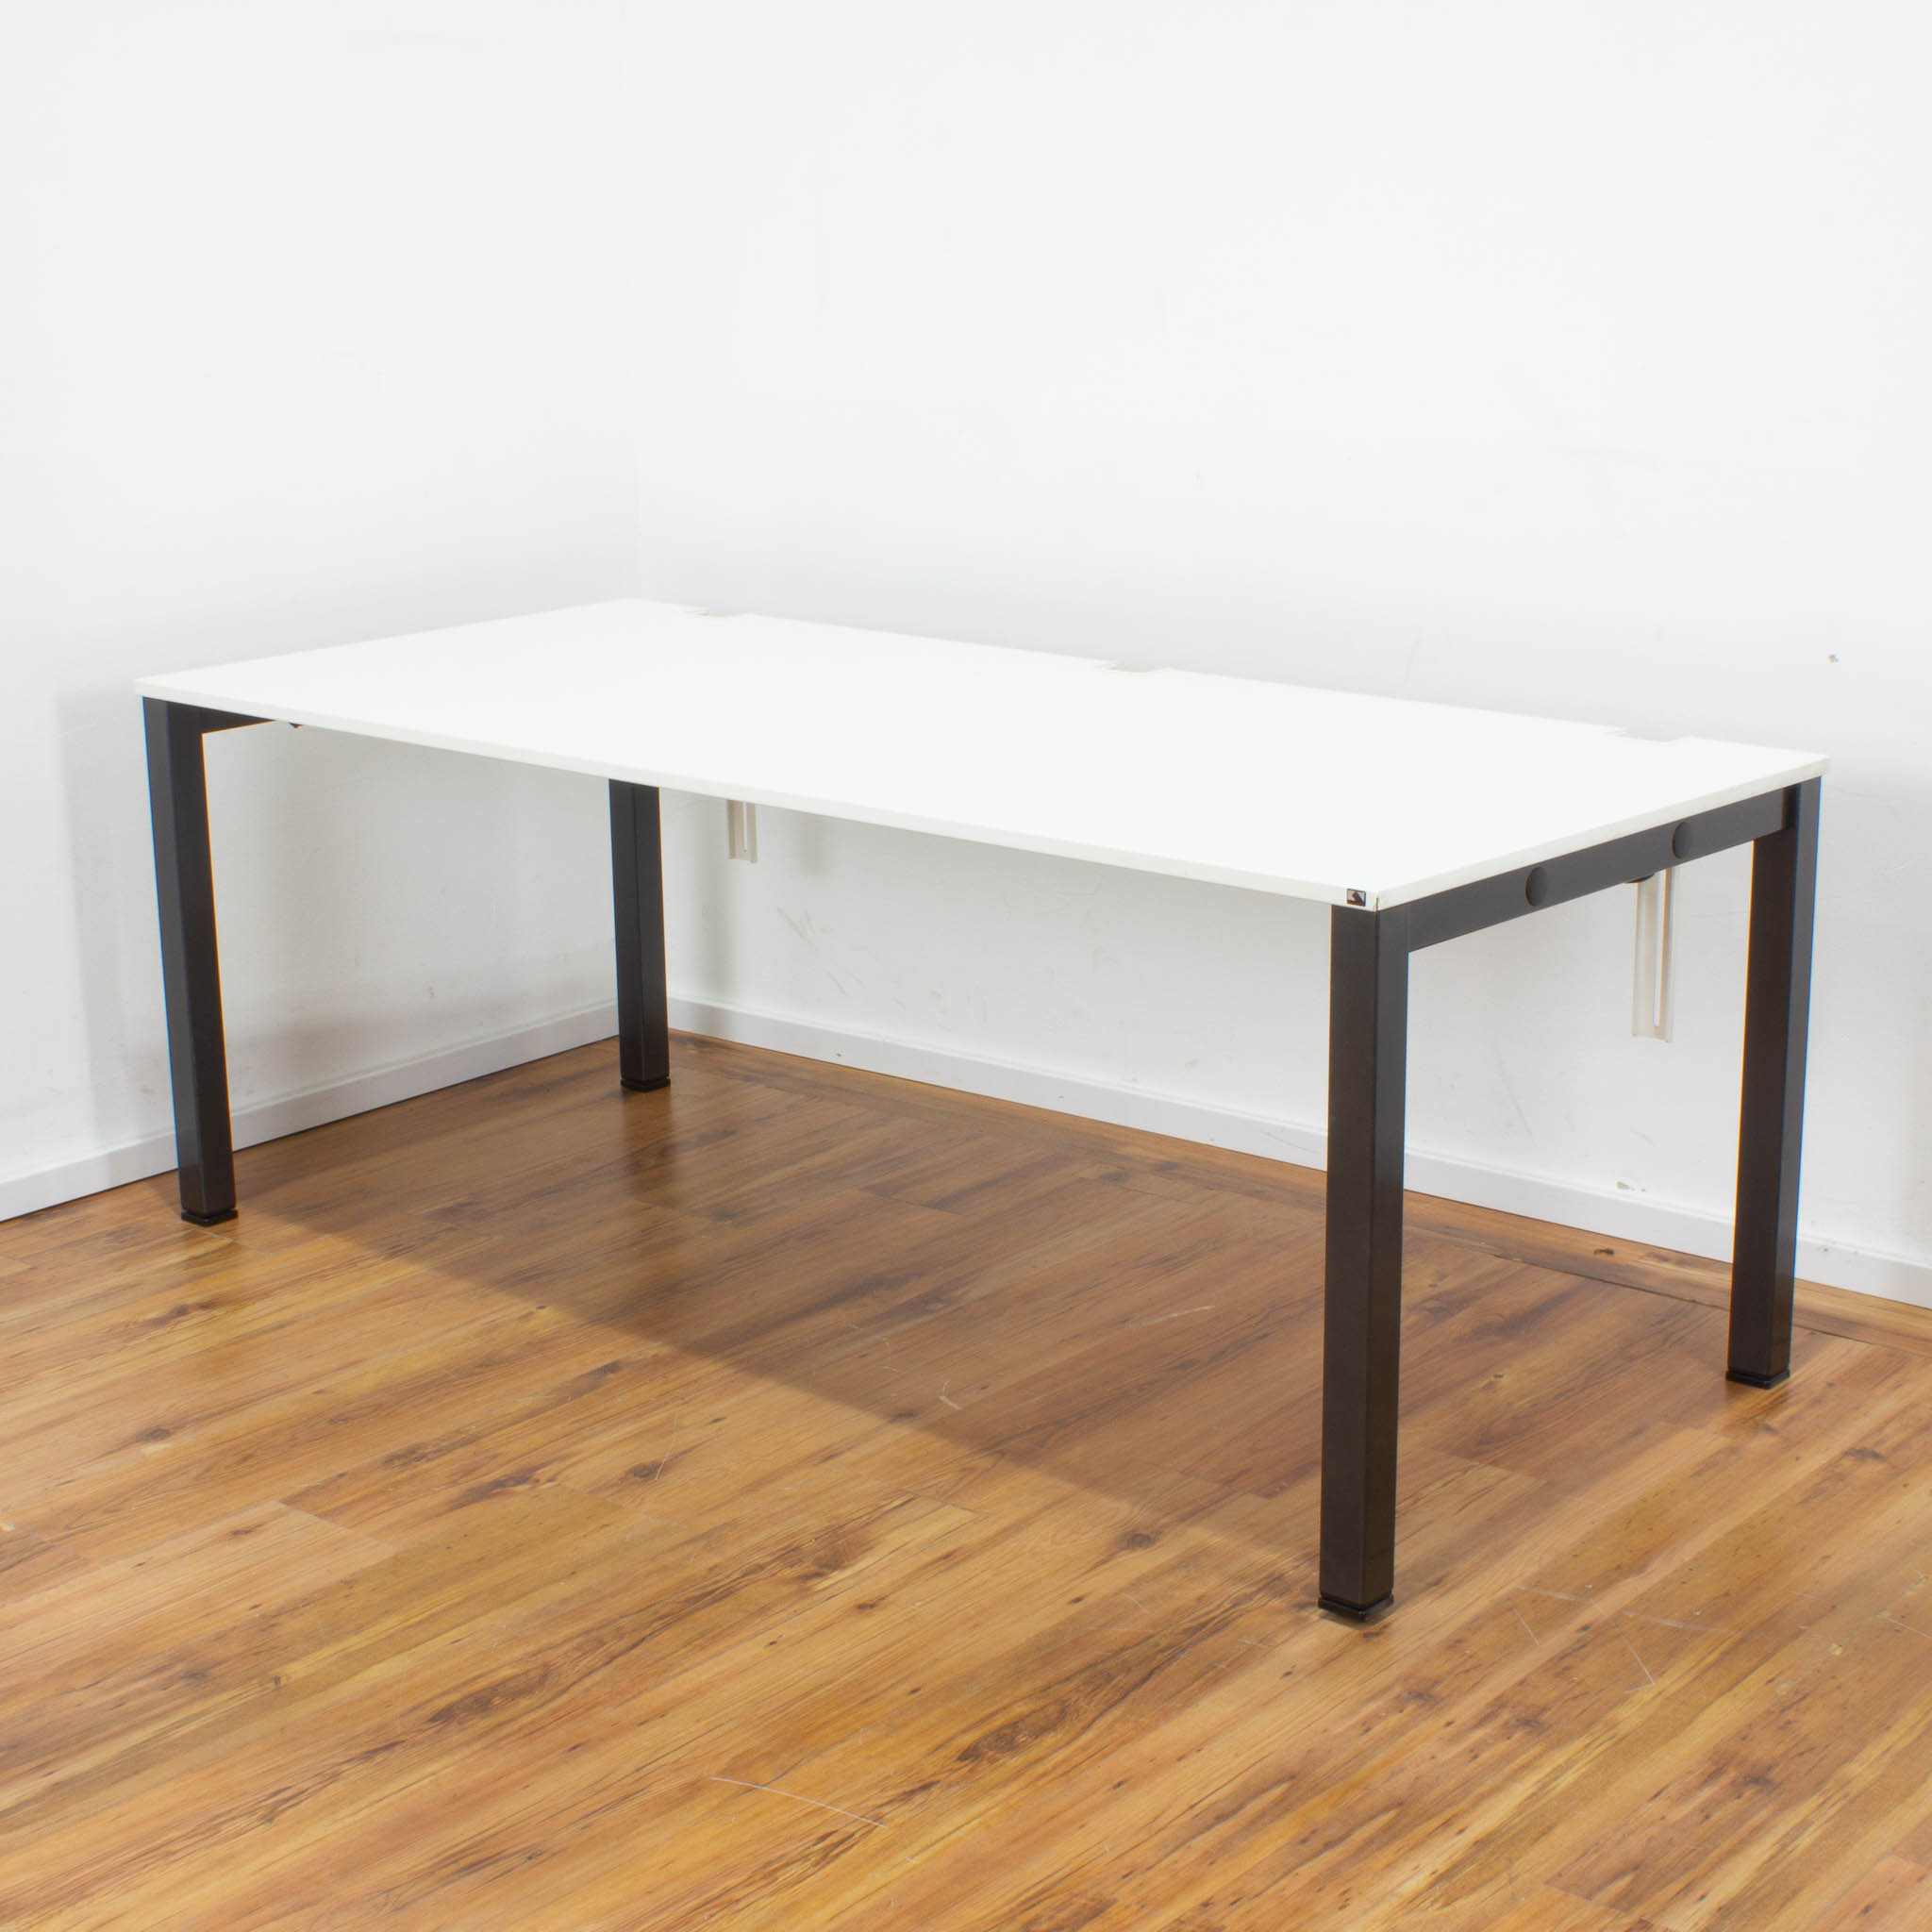 König + Neurath Schreibtisch - 180 x 80 cm - Platte weiß